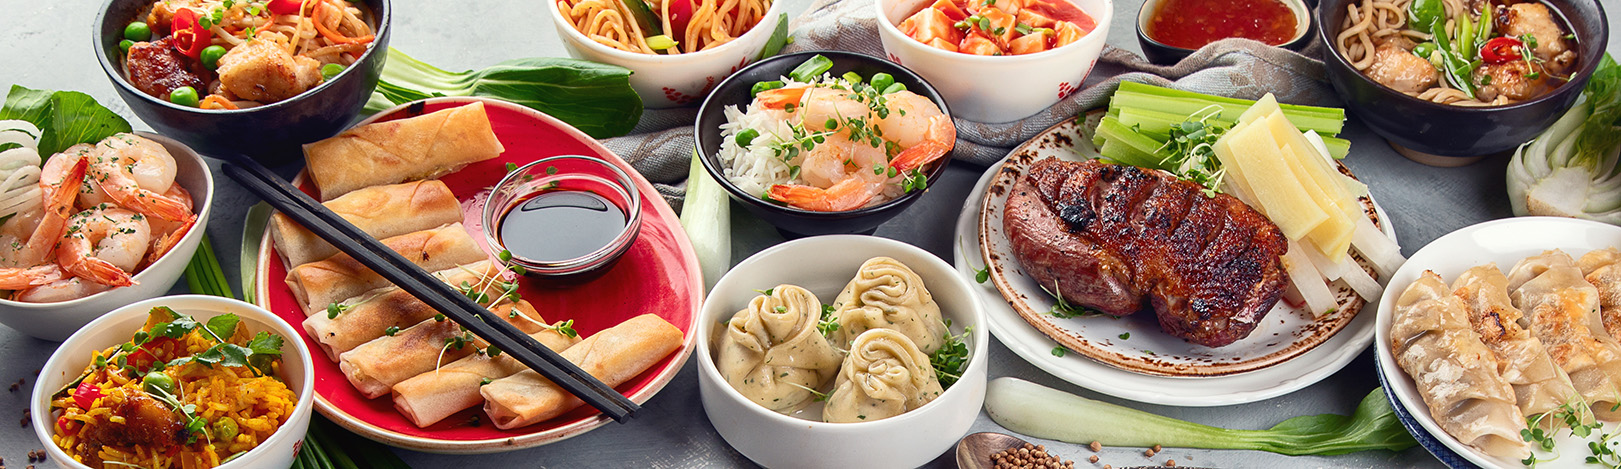 Saiba quais são as diferenças regionais da culinária chinesa | China2Brazil